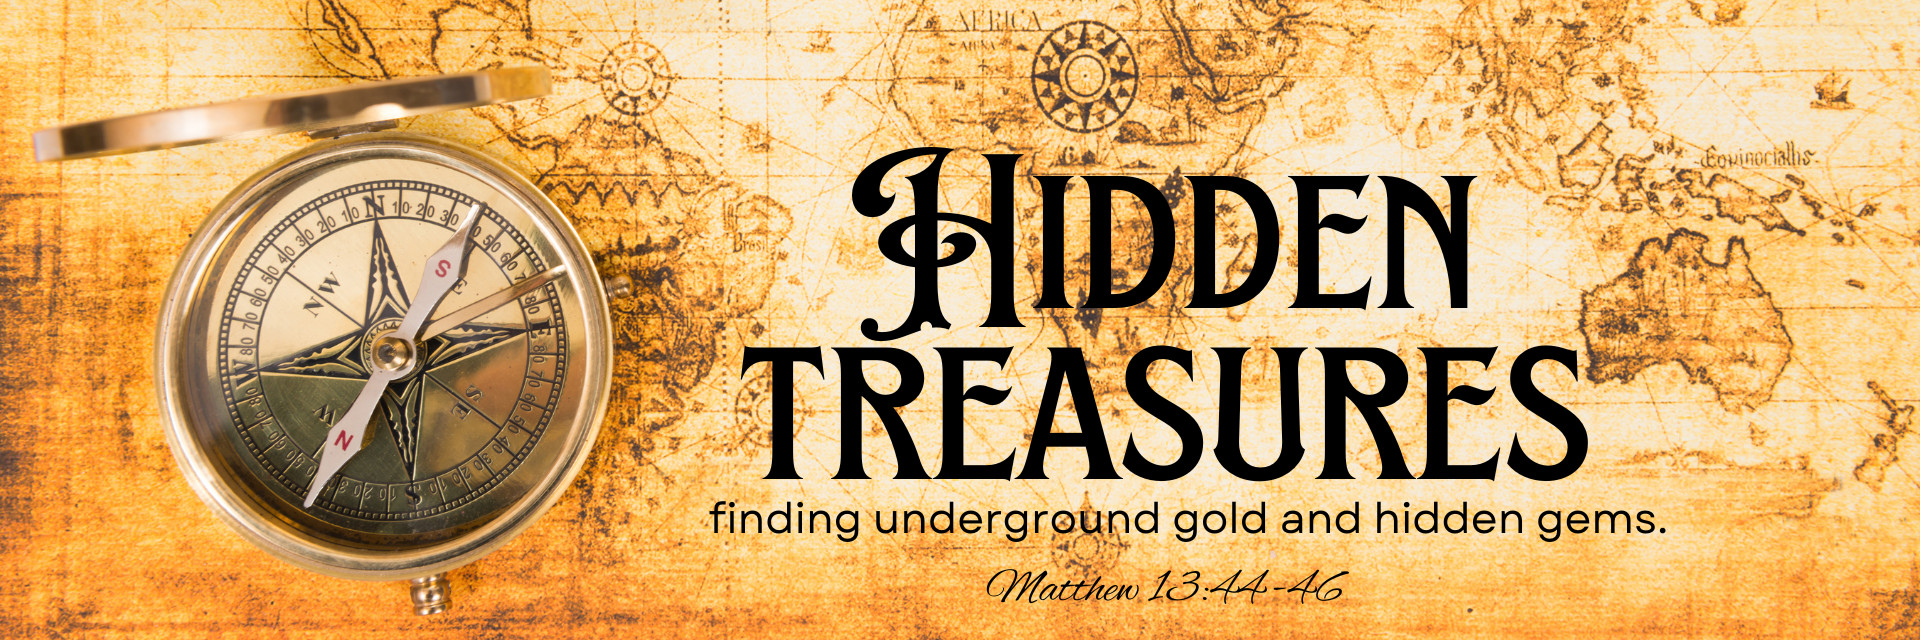 Hidden Treasures - Effect Radio